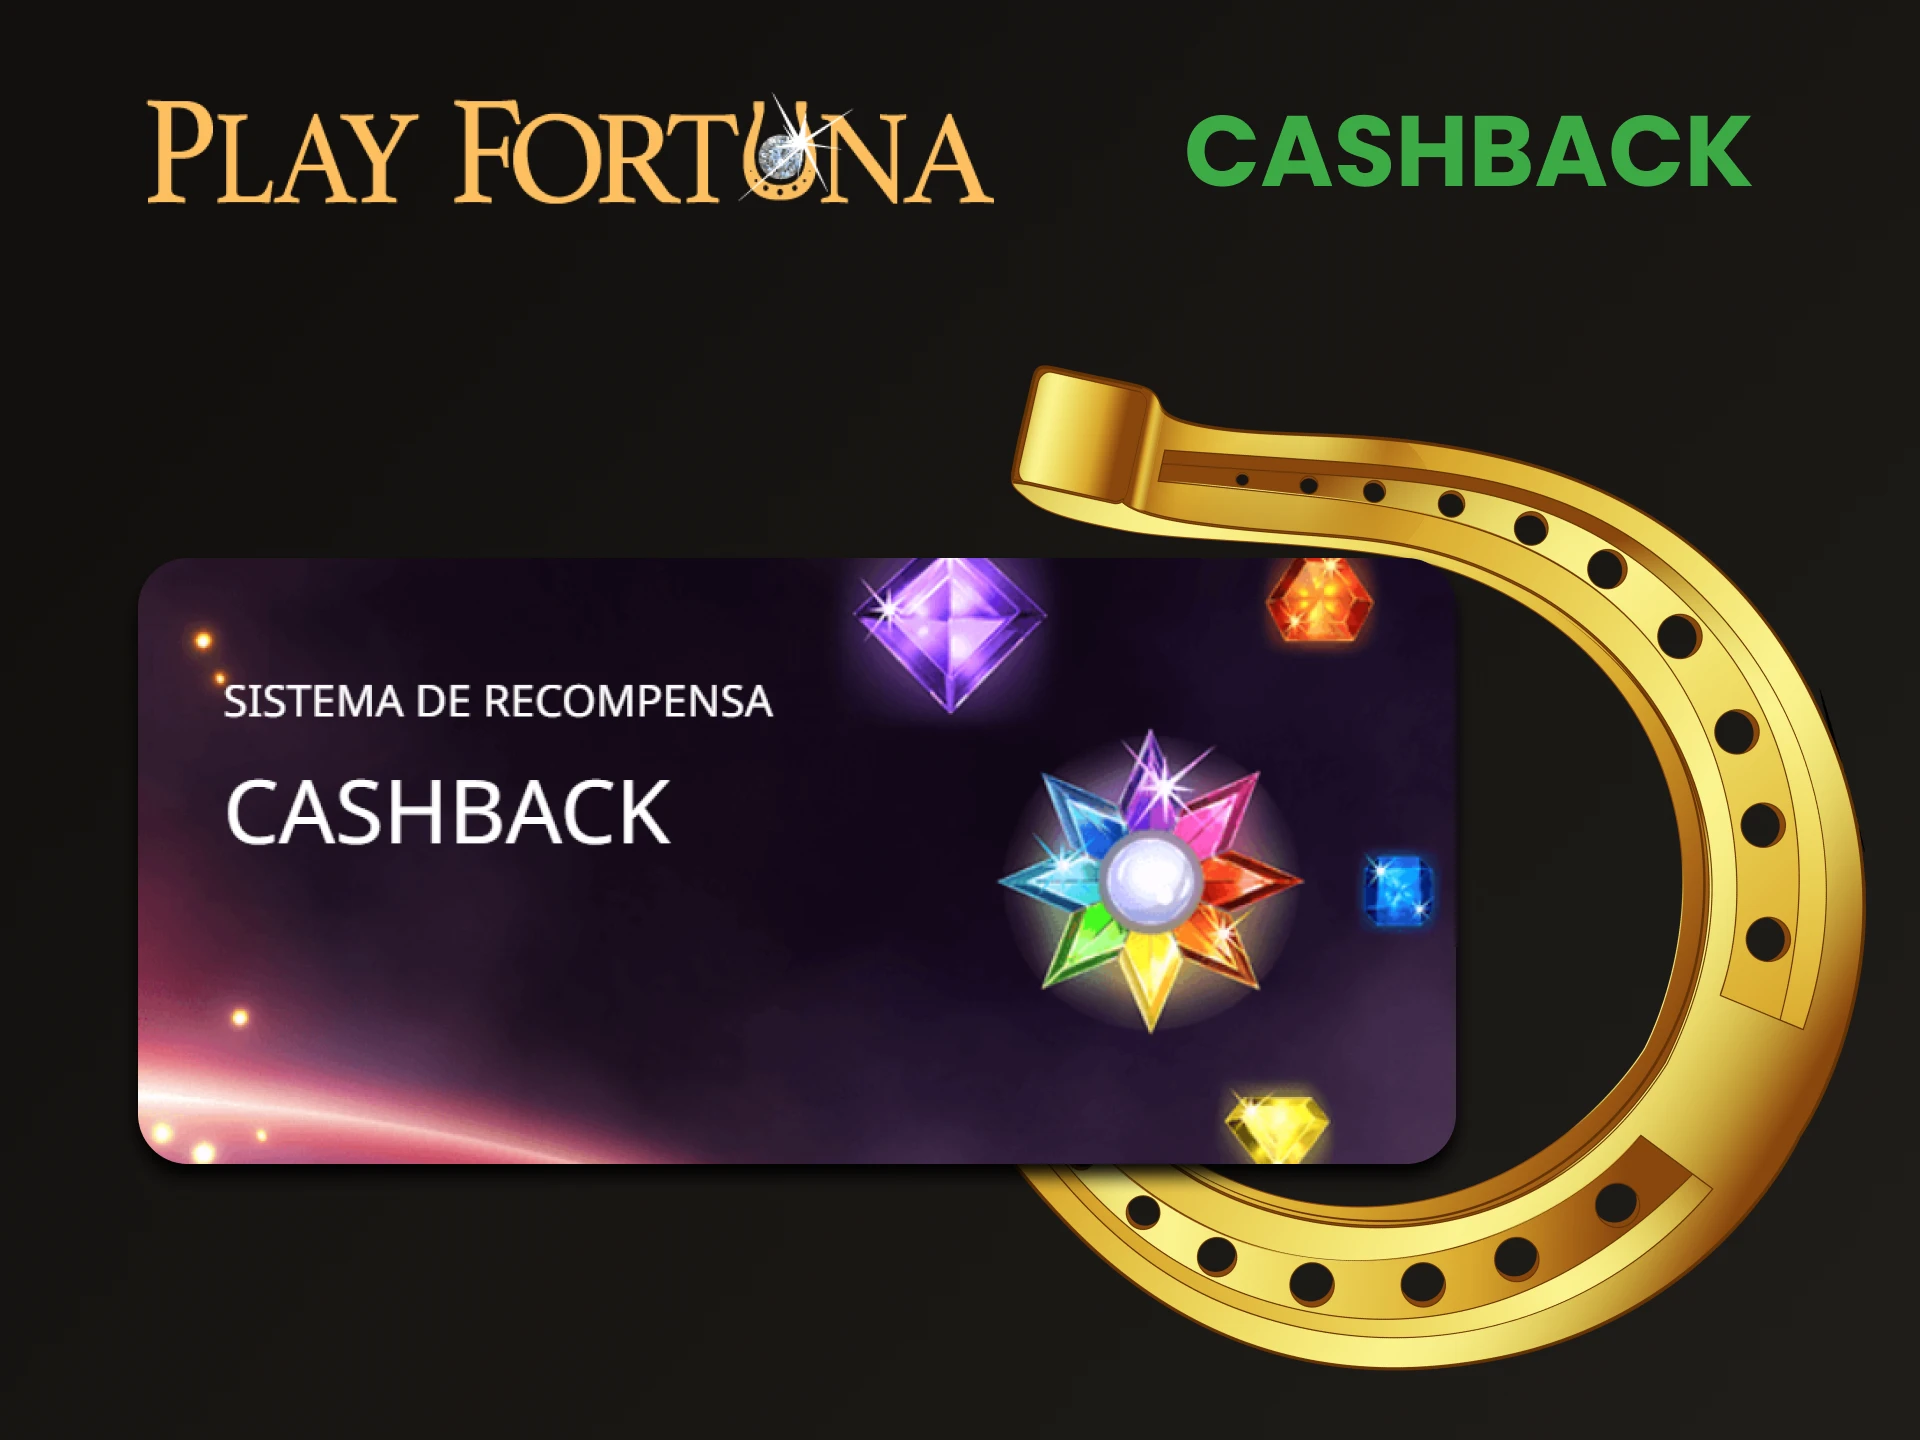 O Play Fortuna oferece um bônus na forma de cashback.